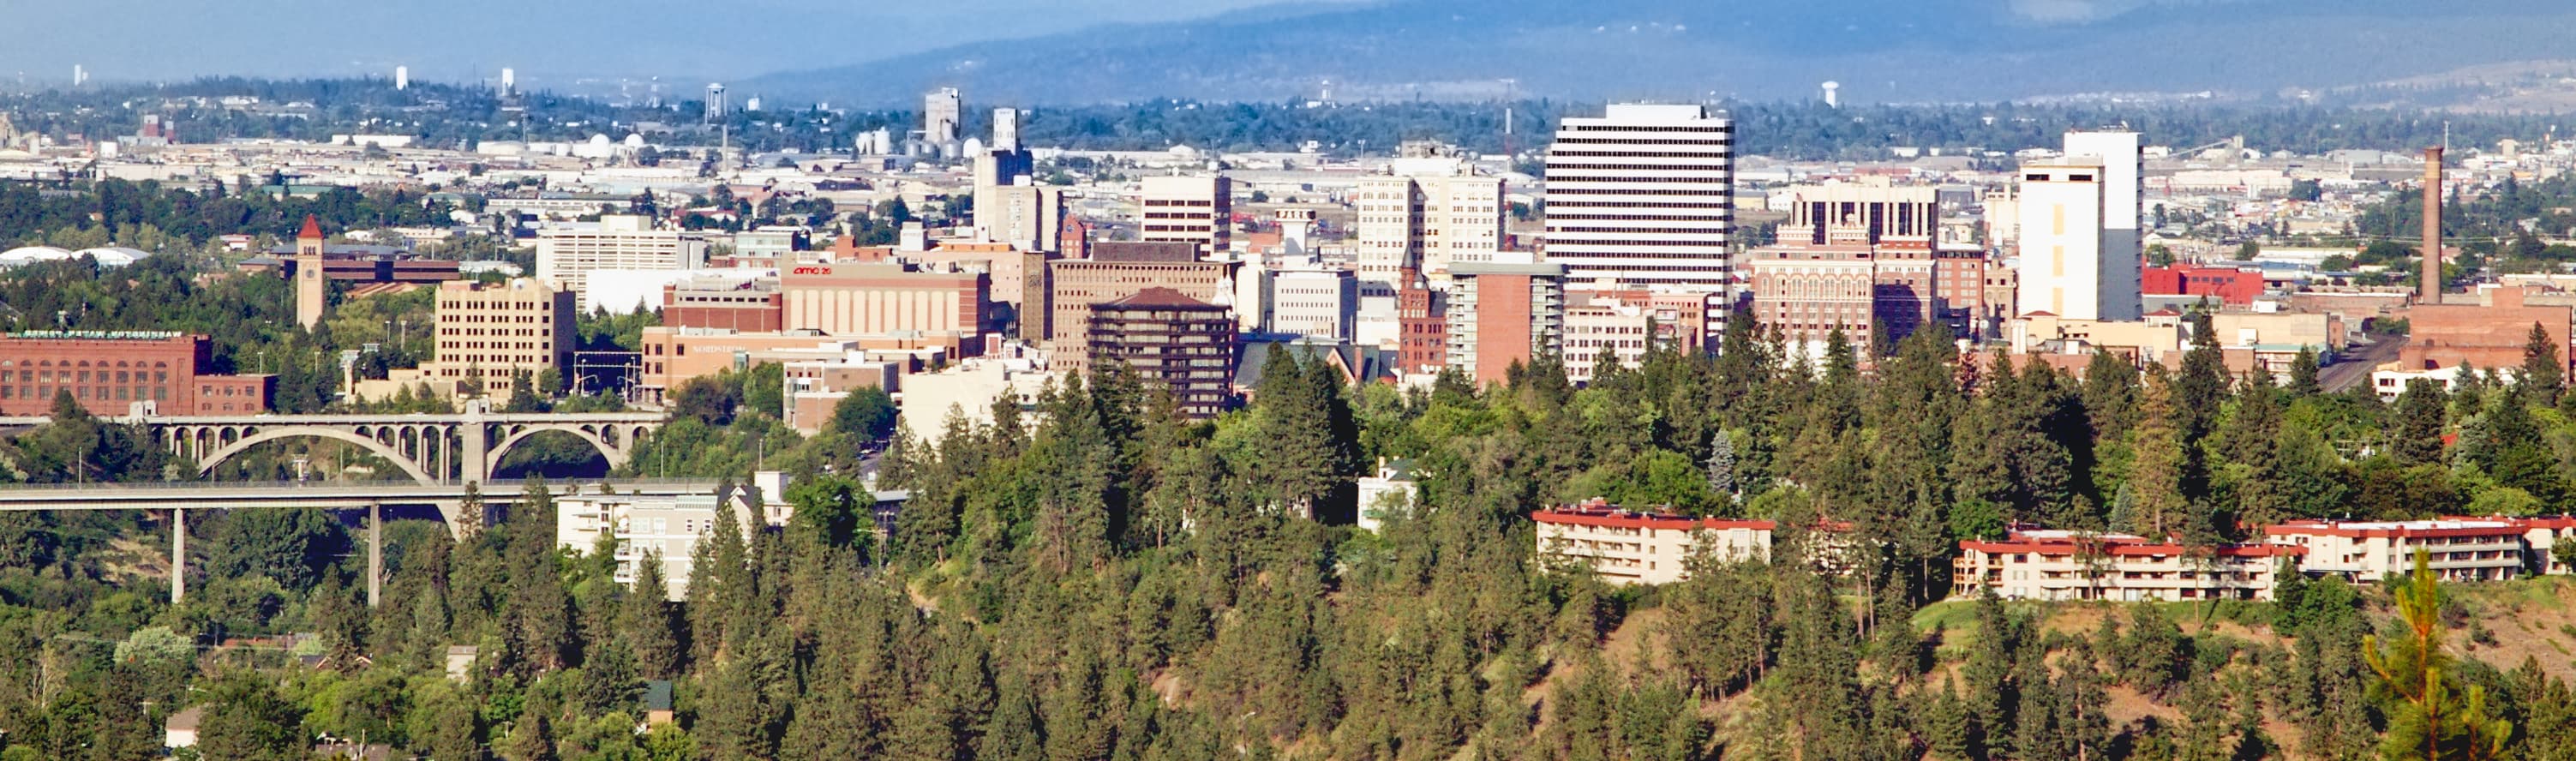 View of Spokane, WA